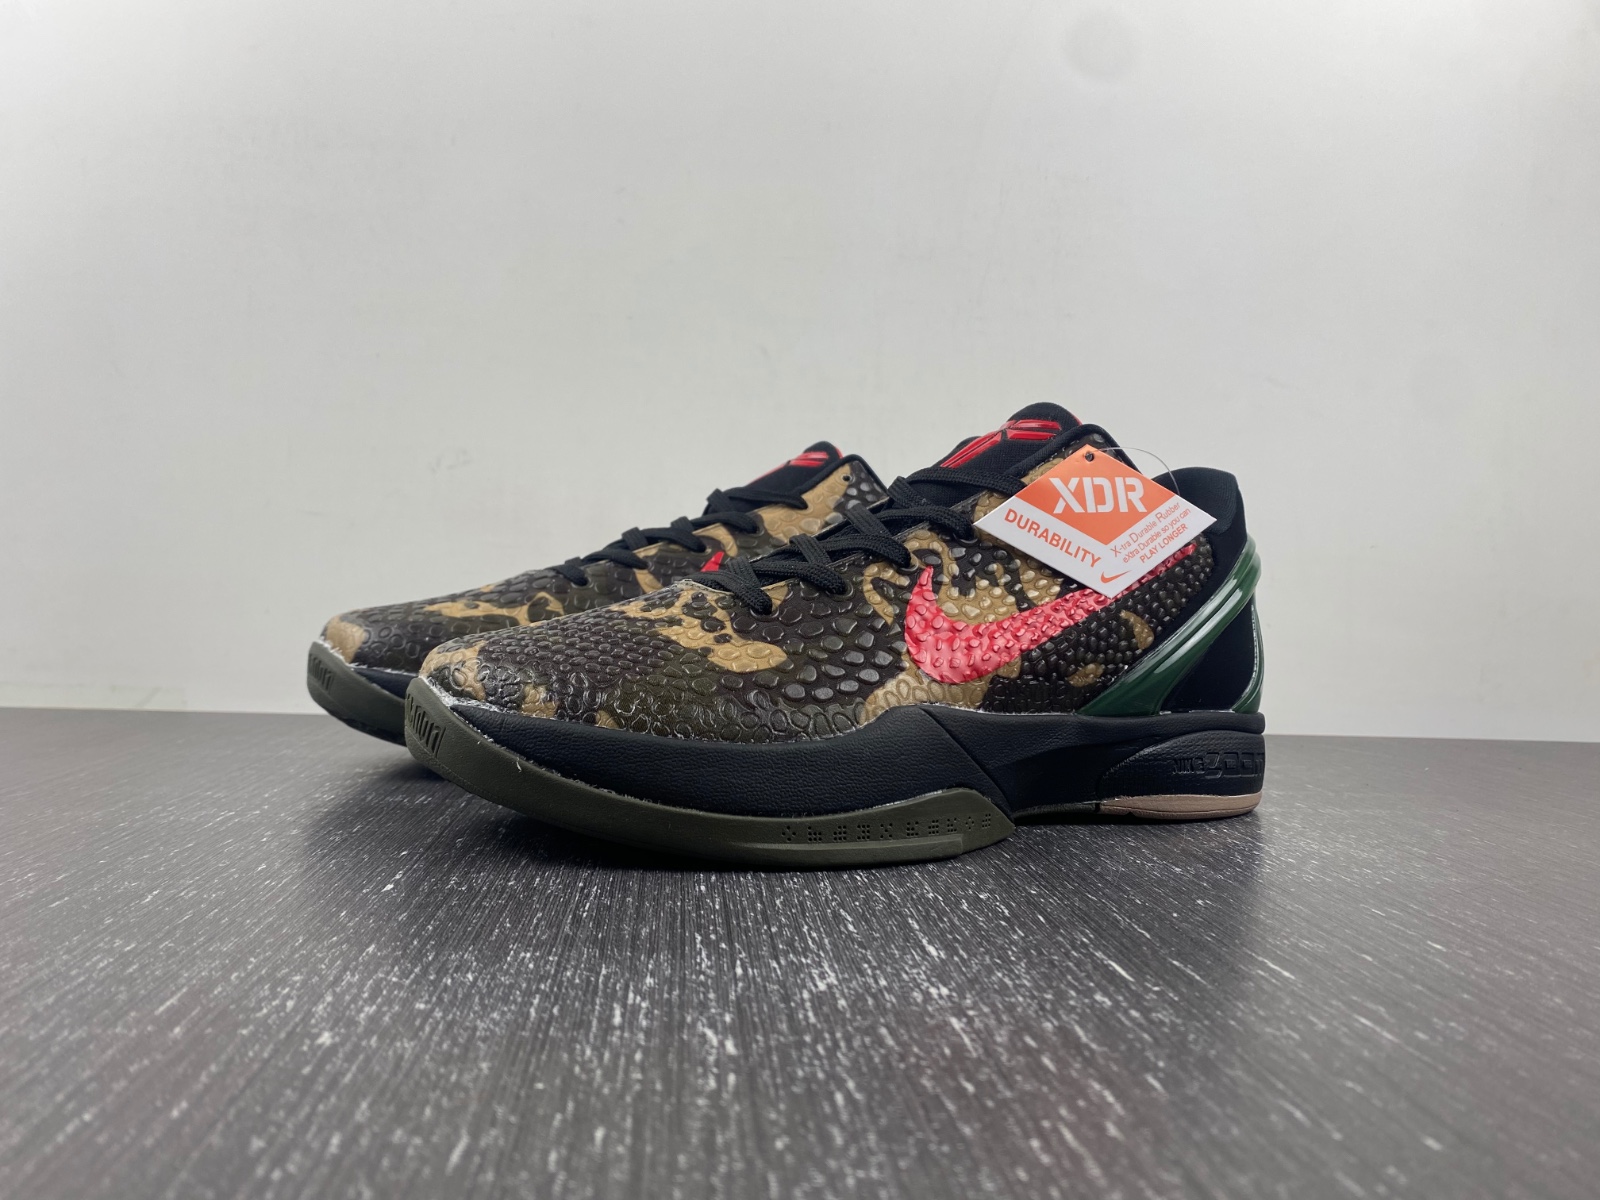 Nike Kobe 6 Protro “Italian Camo”